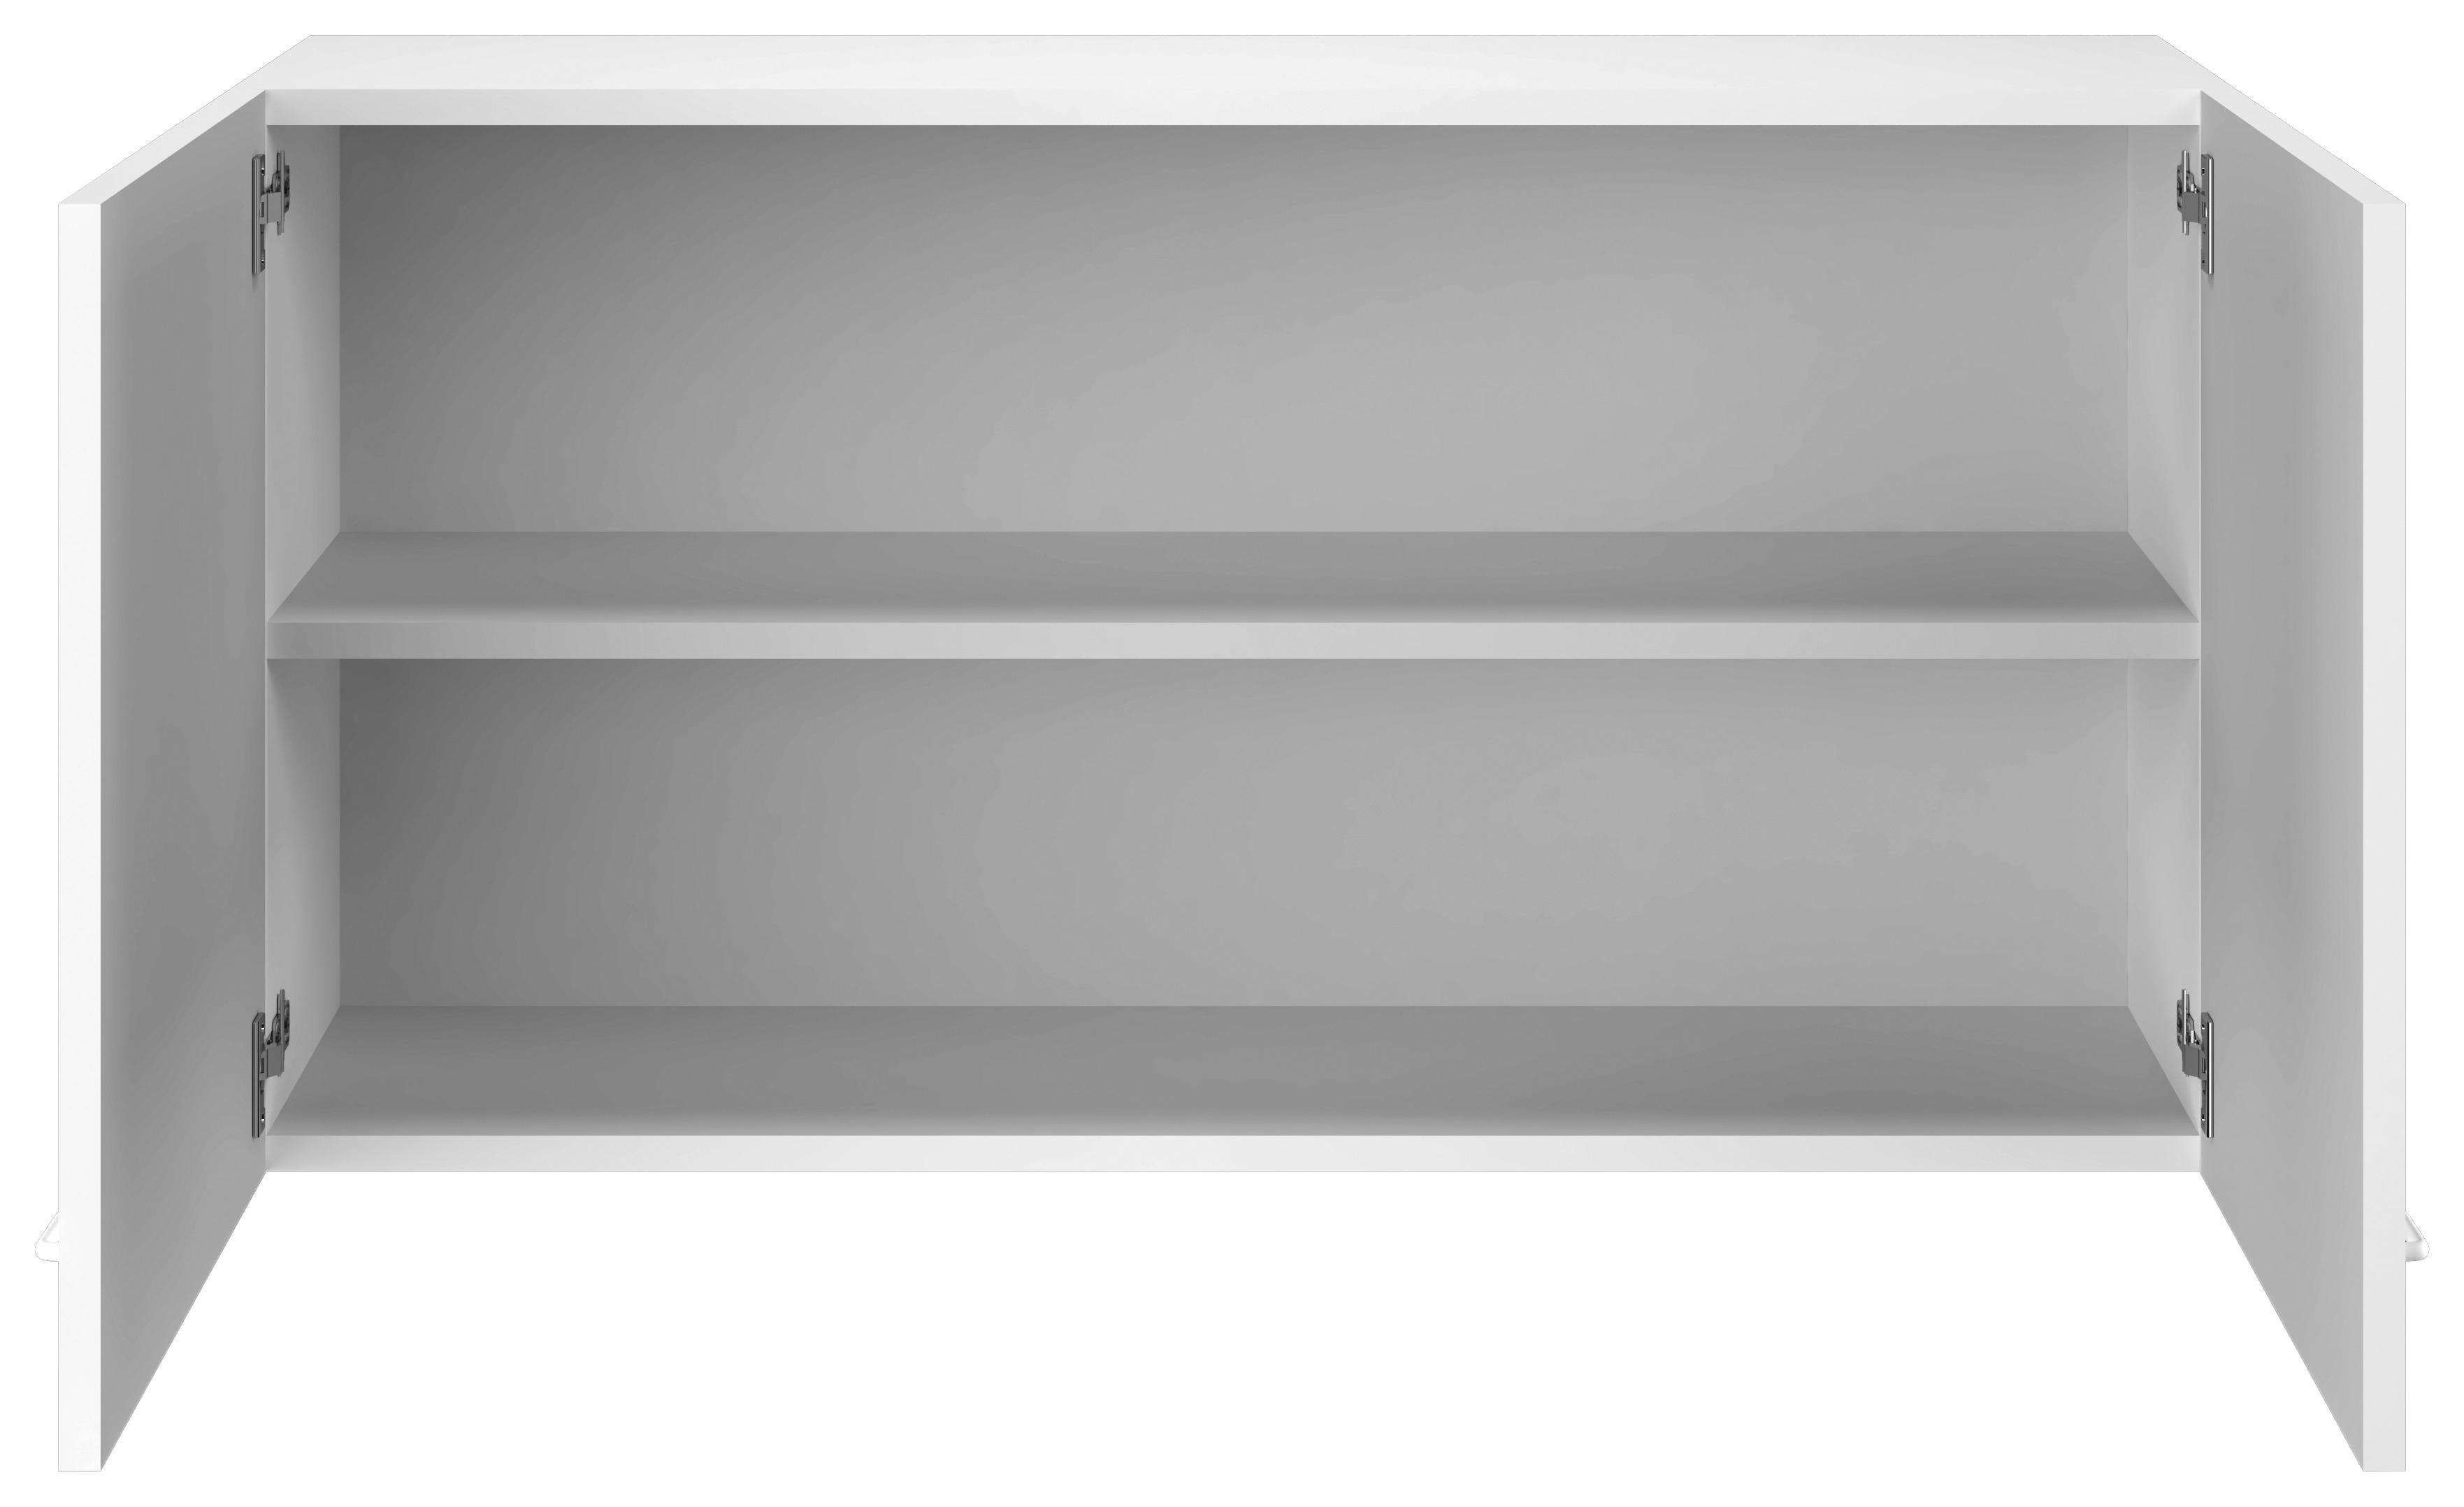 Küchenoberschrank Speed B: 100 cm Weiß 2 Drehtüren - Weiß, KONVENTIONELL, Holzwerkstoff (100/54/32cm)